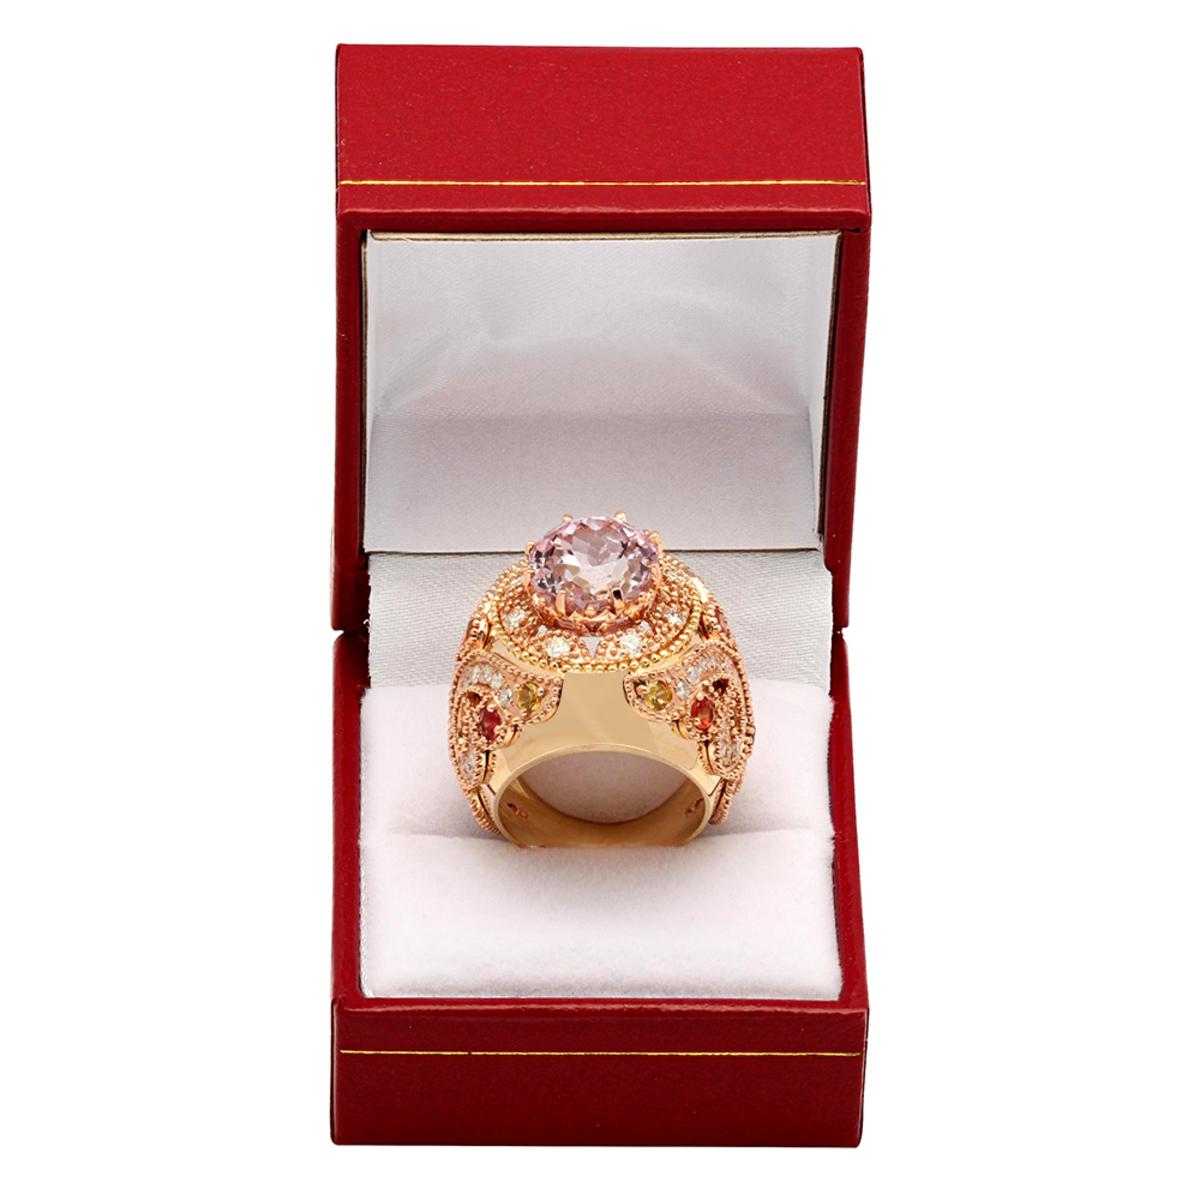 14k Yellow Gold 15.08ct Kunzite 1.20ct Sapphire 1.58ct Diamond Ring